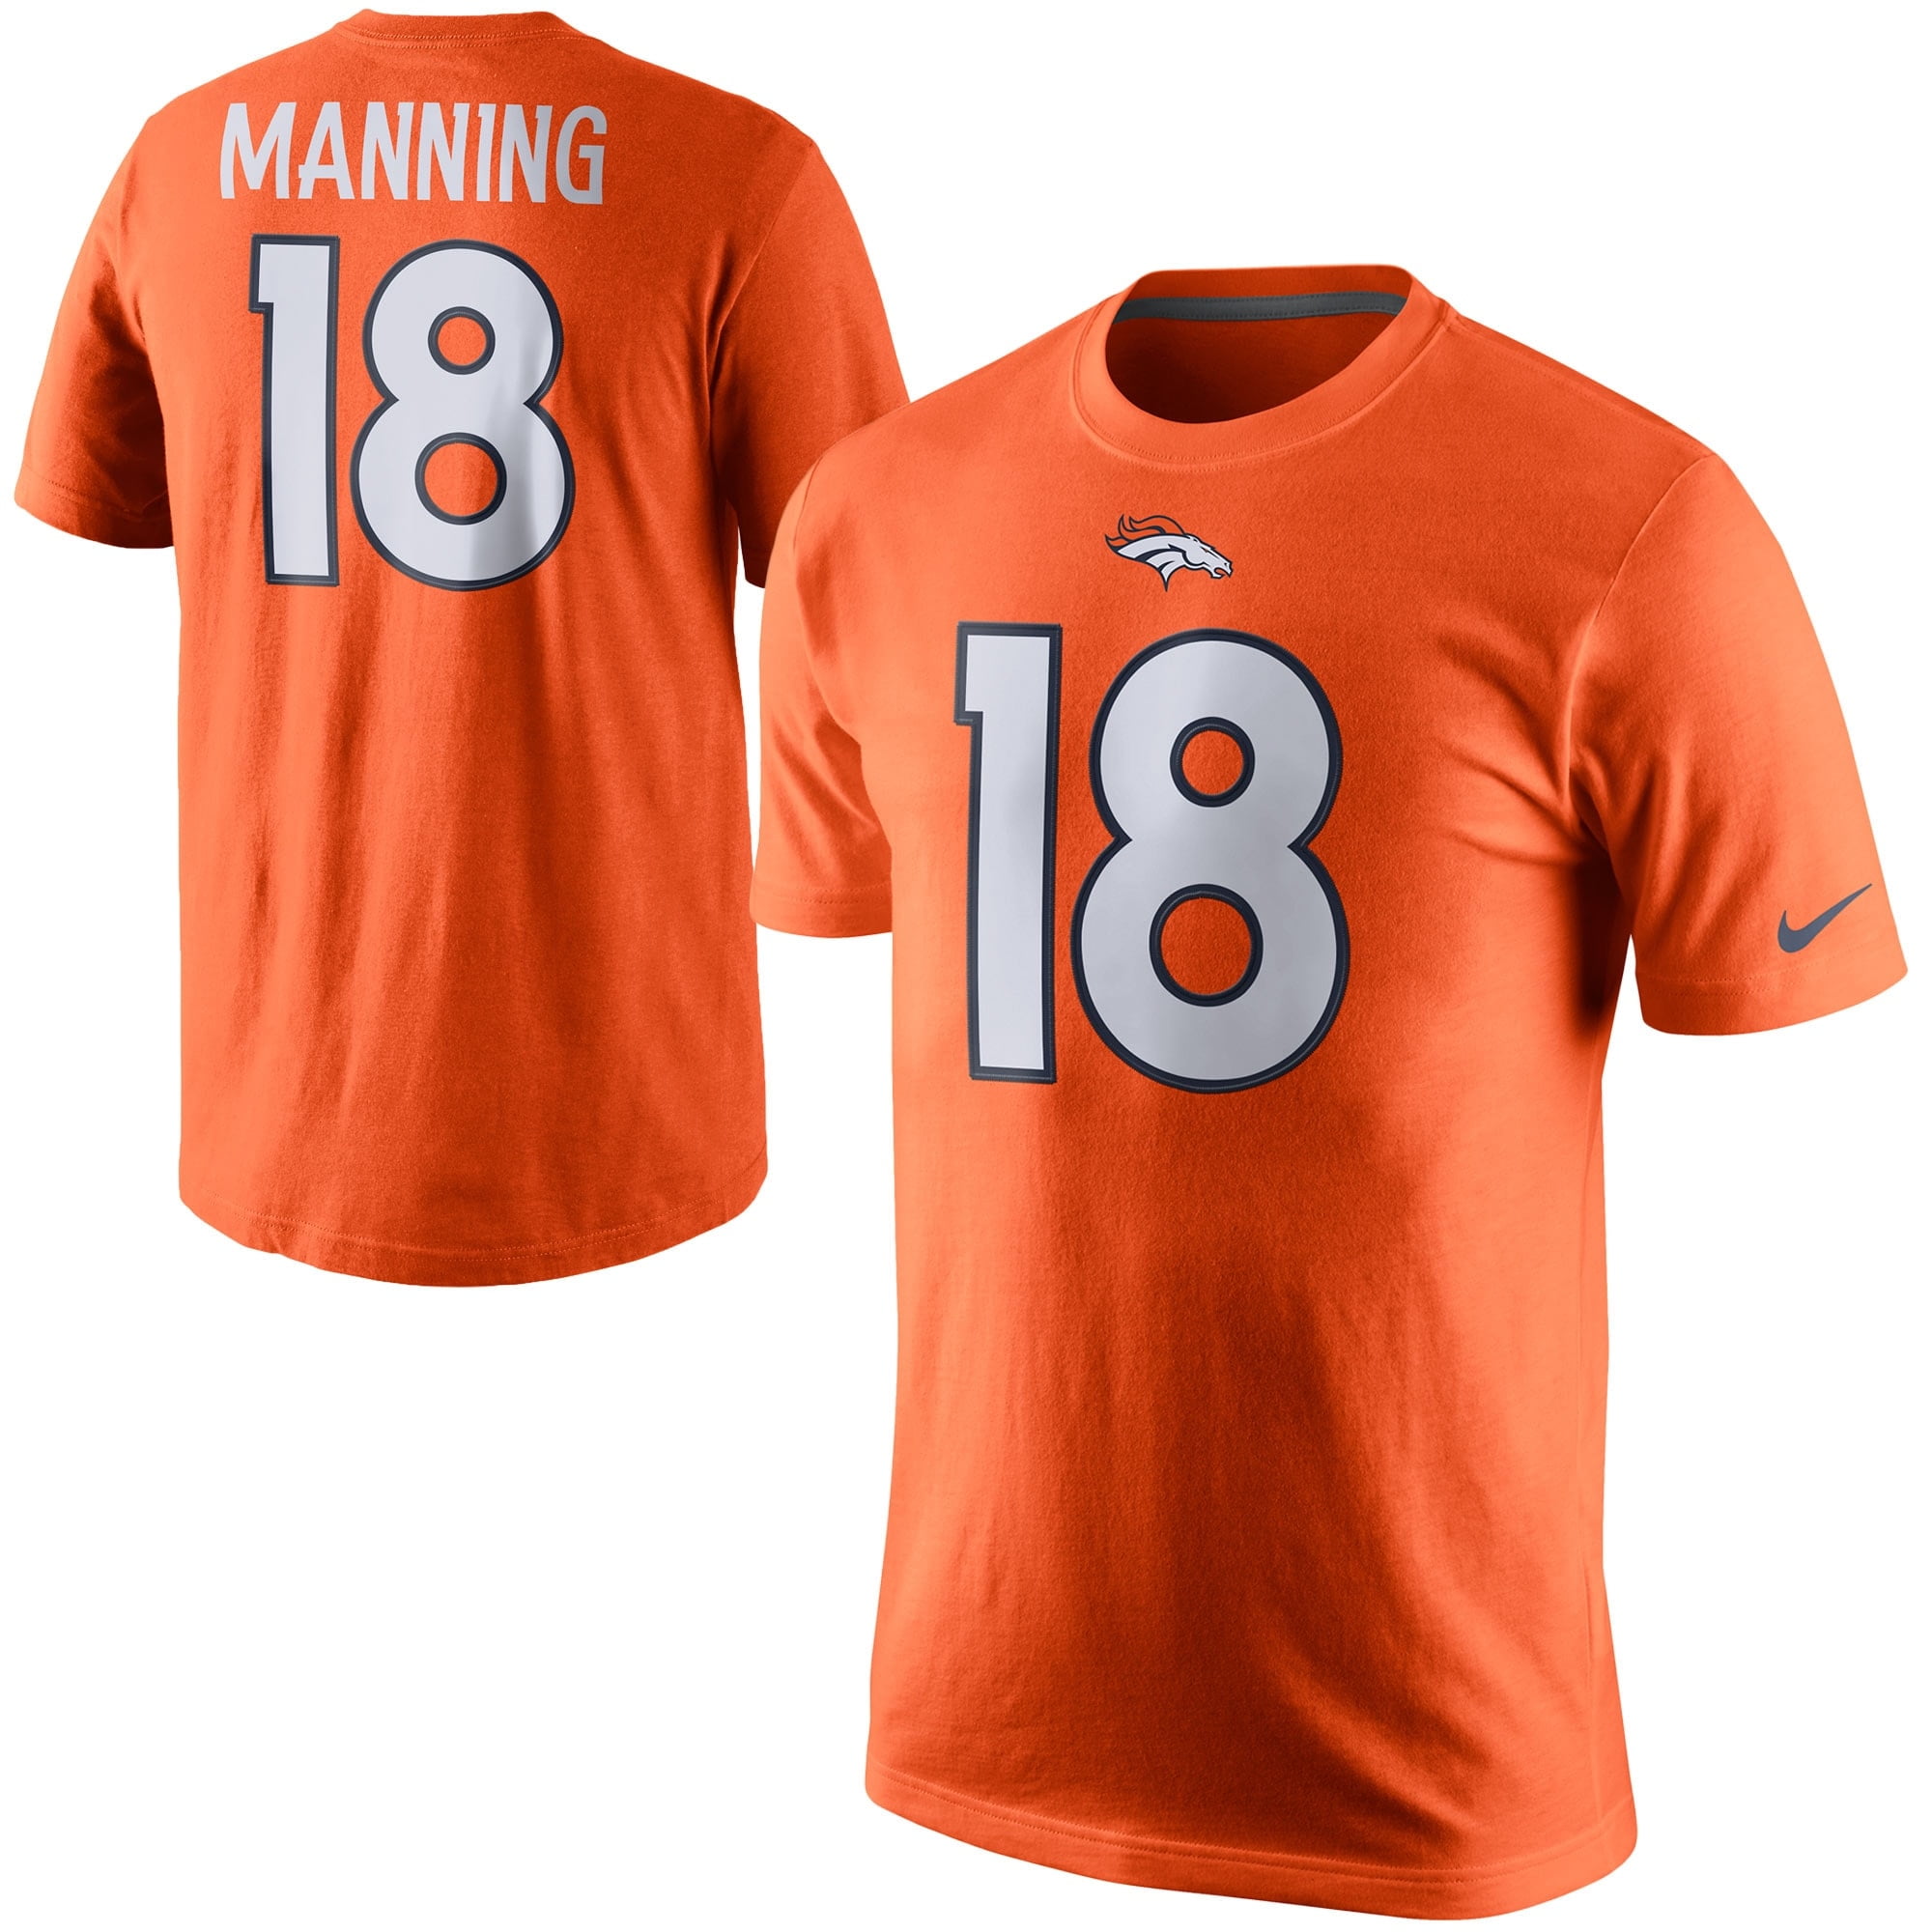 Peyton Manning Broncos T Shirt Flash Sales, SAVE 43% 